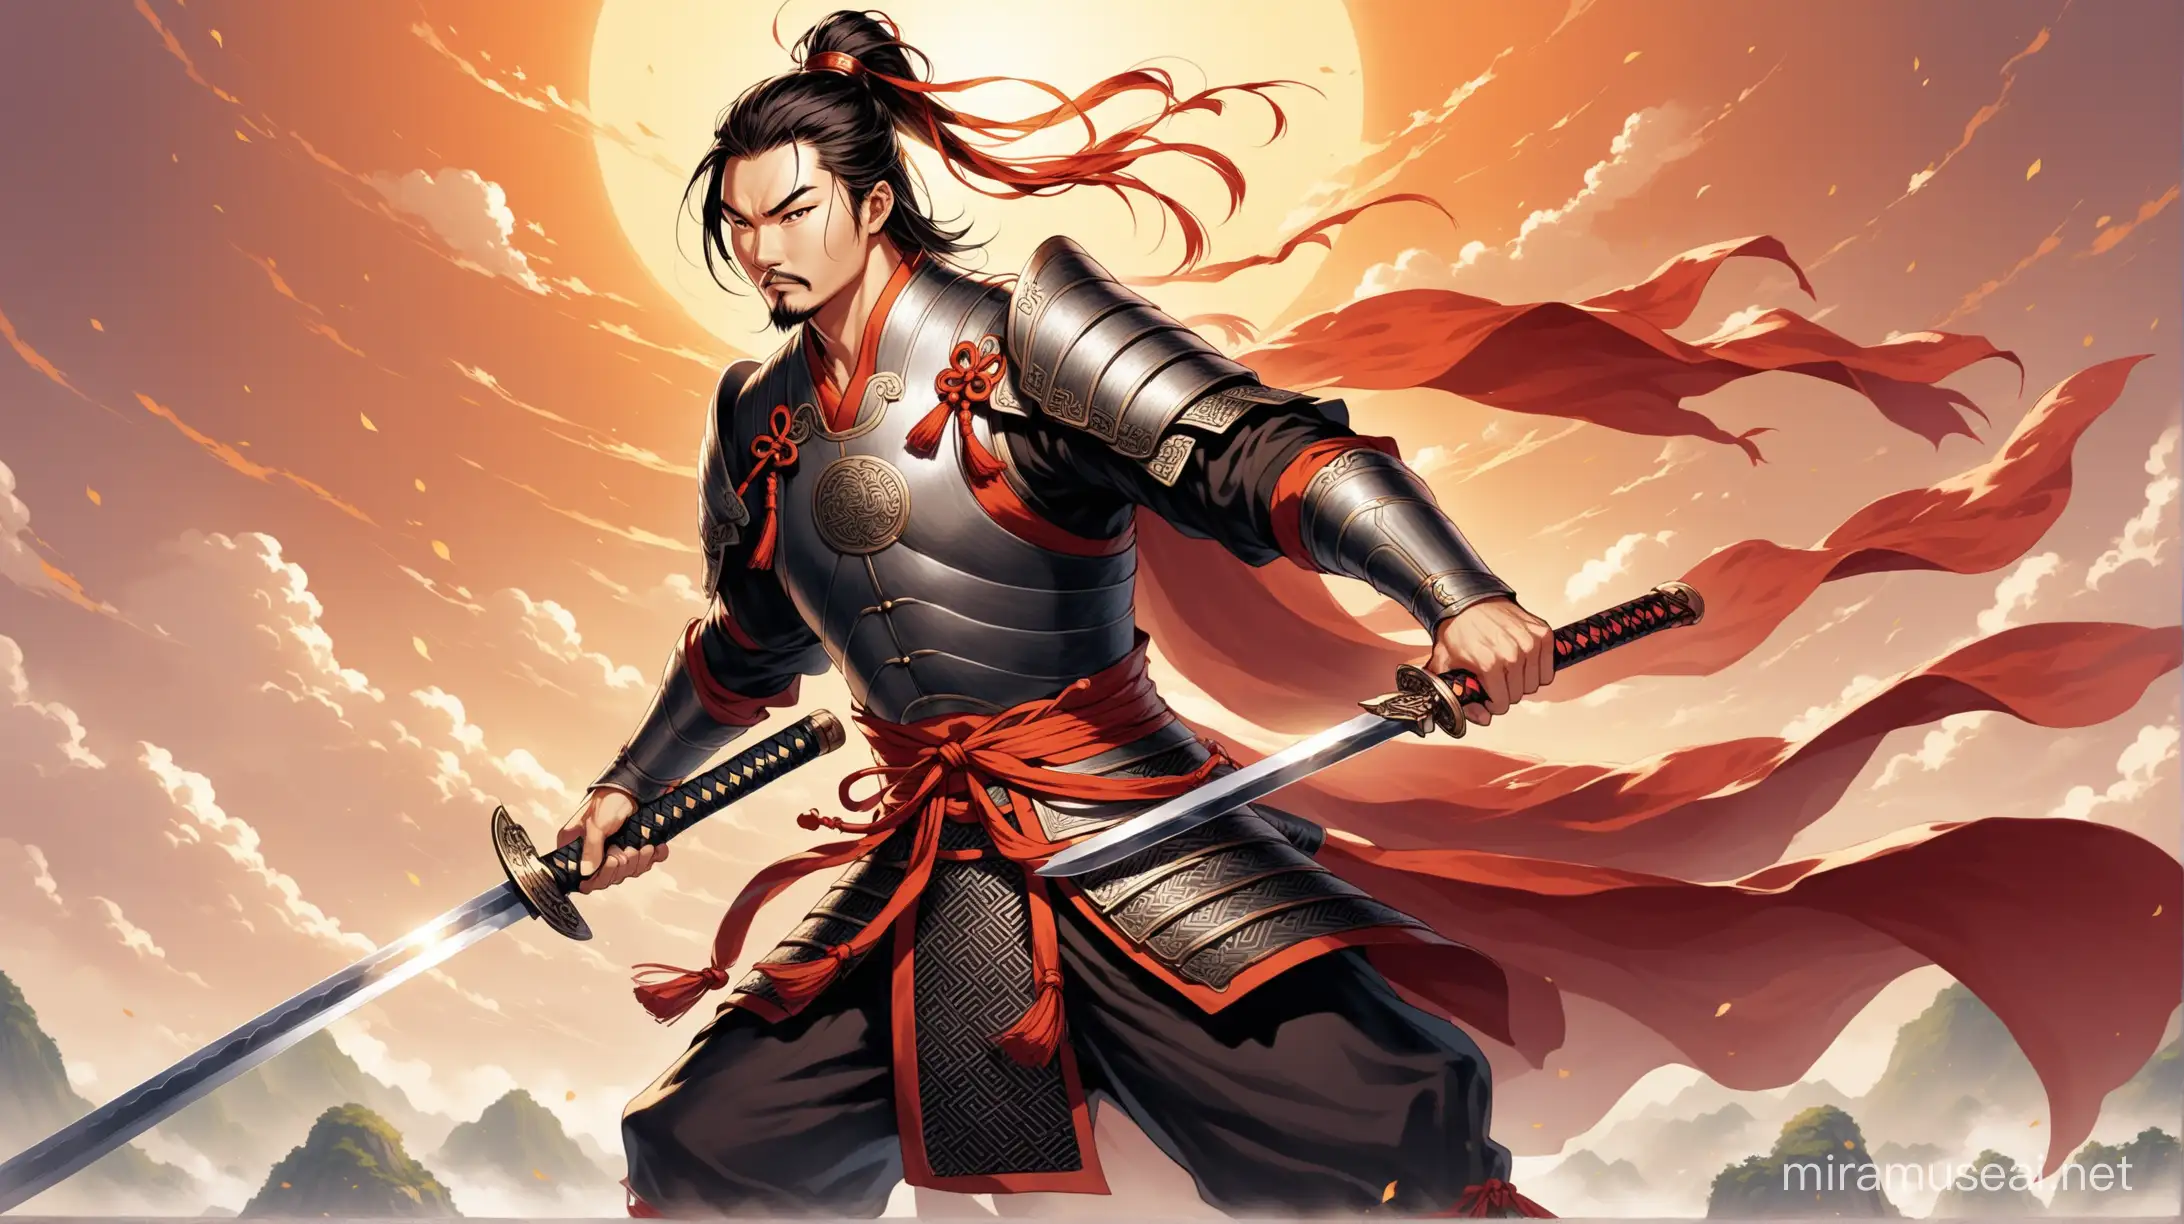 Chinese Warrior Wielding Sword in Ancient Battle Attire